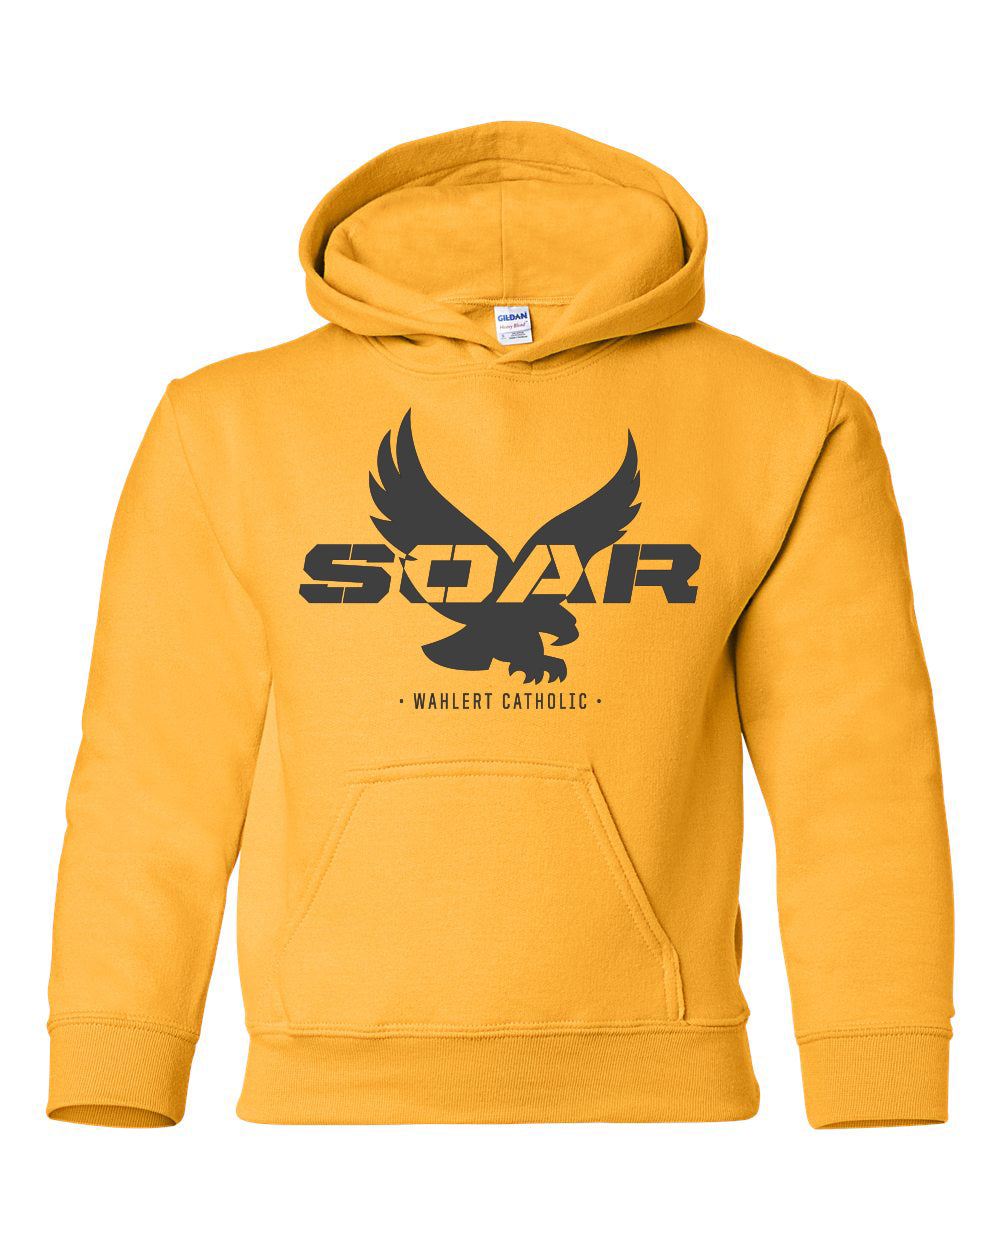 18500B - SOAR SPIRIT - Youth Heavy Blend Hooded Sweatshirt